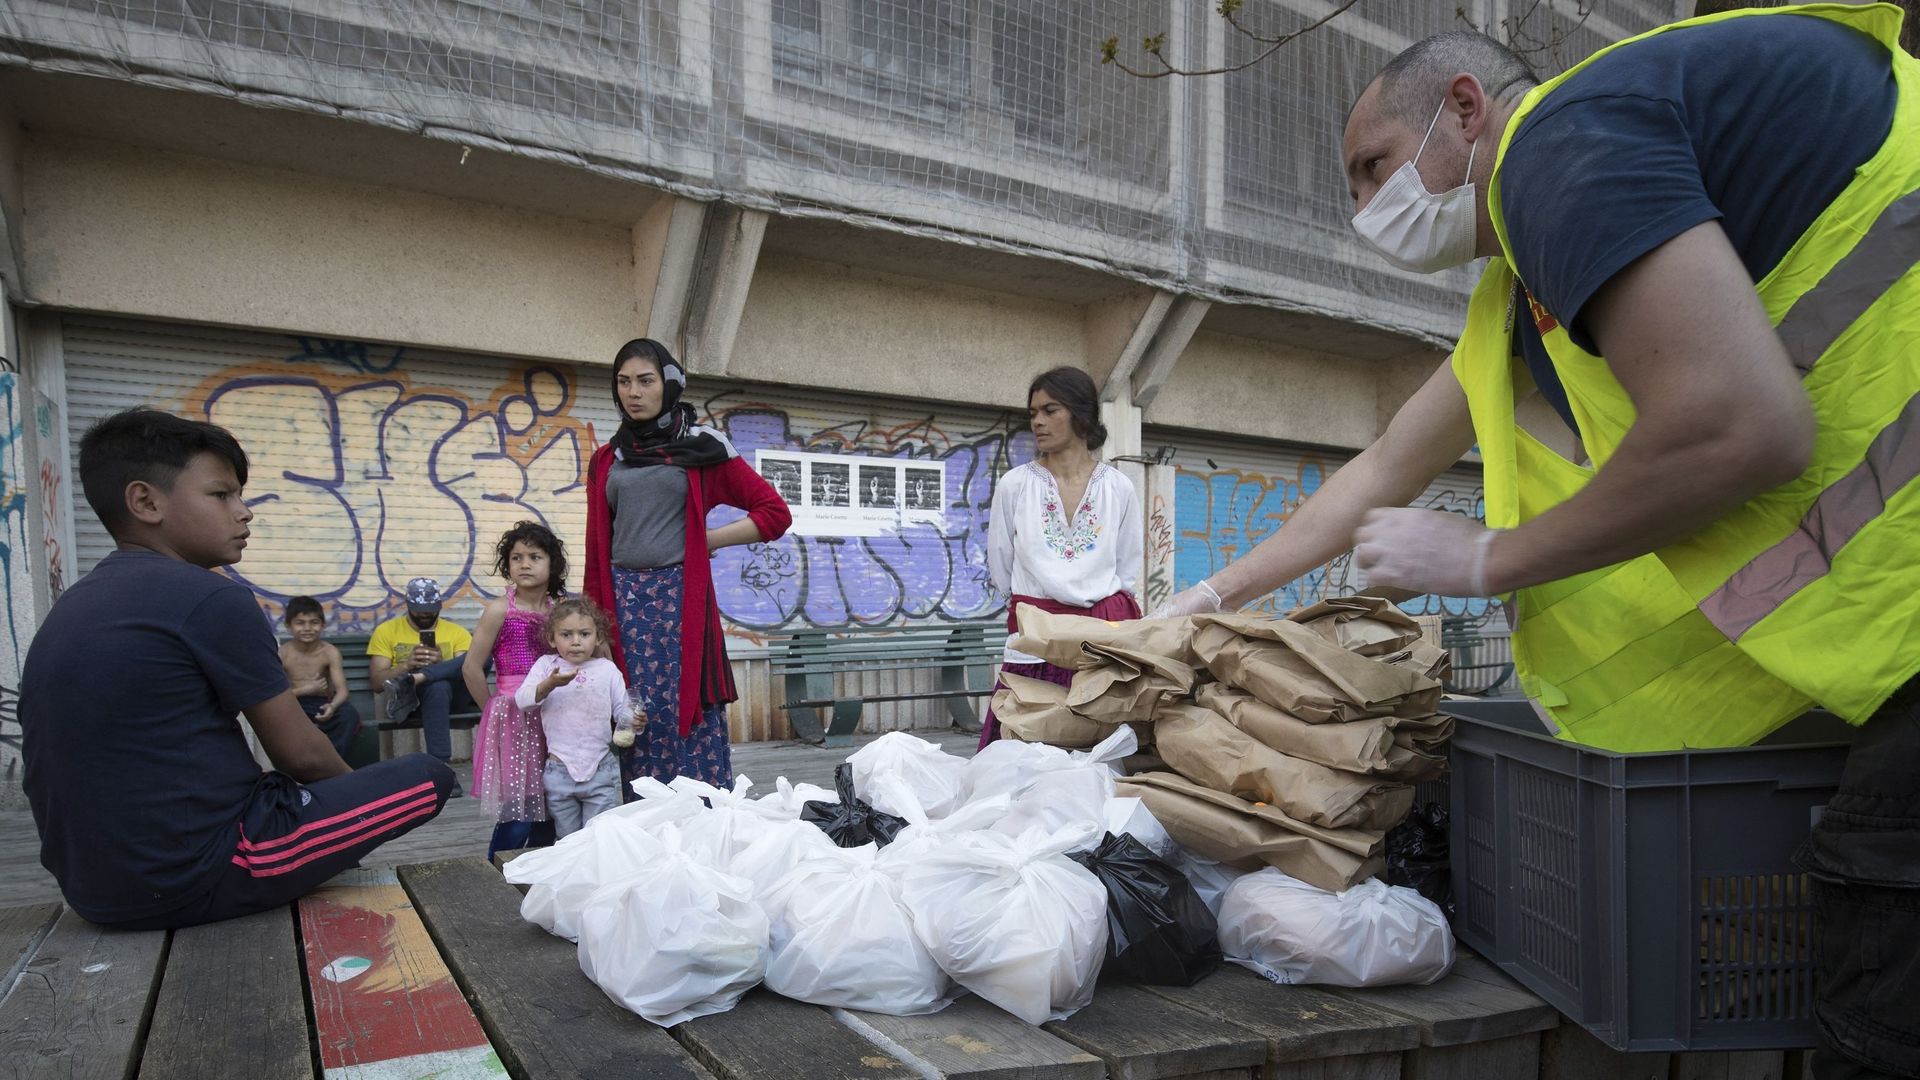 Une distribution de nourriture par l’Armée du Salut à Paris le 9 avril 2020, au 24e jour de confinement. La suspension de nombreux emplois informels à cause du lockdown a accentué la pauvreté.